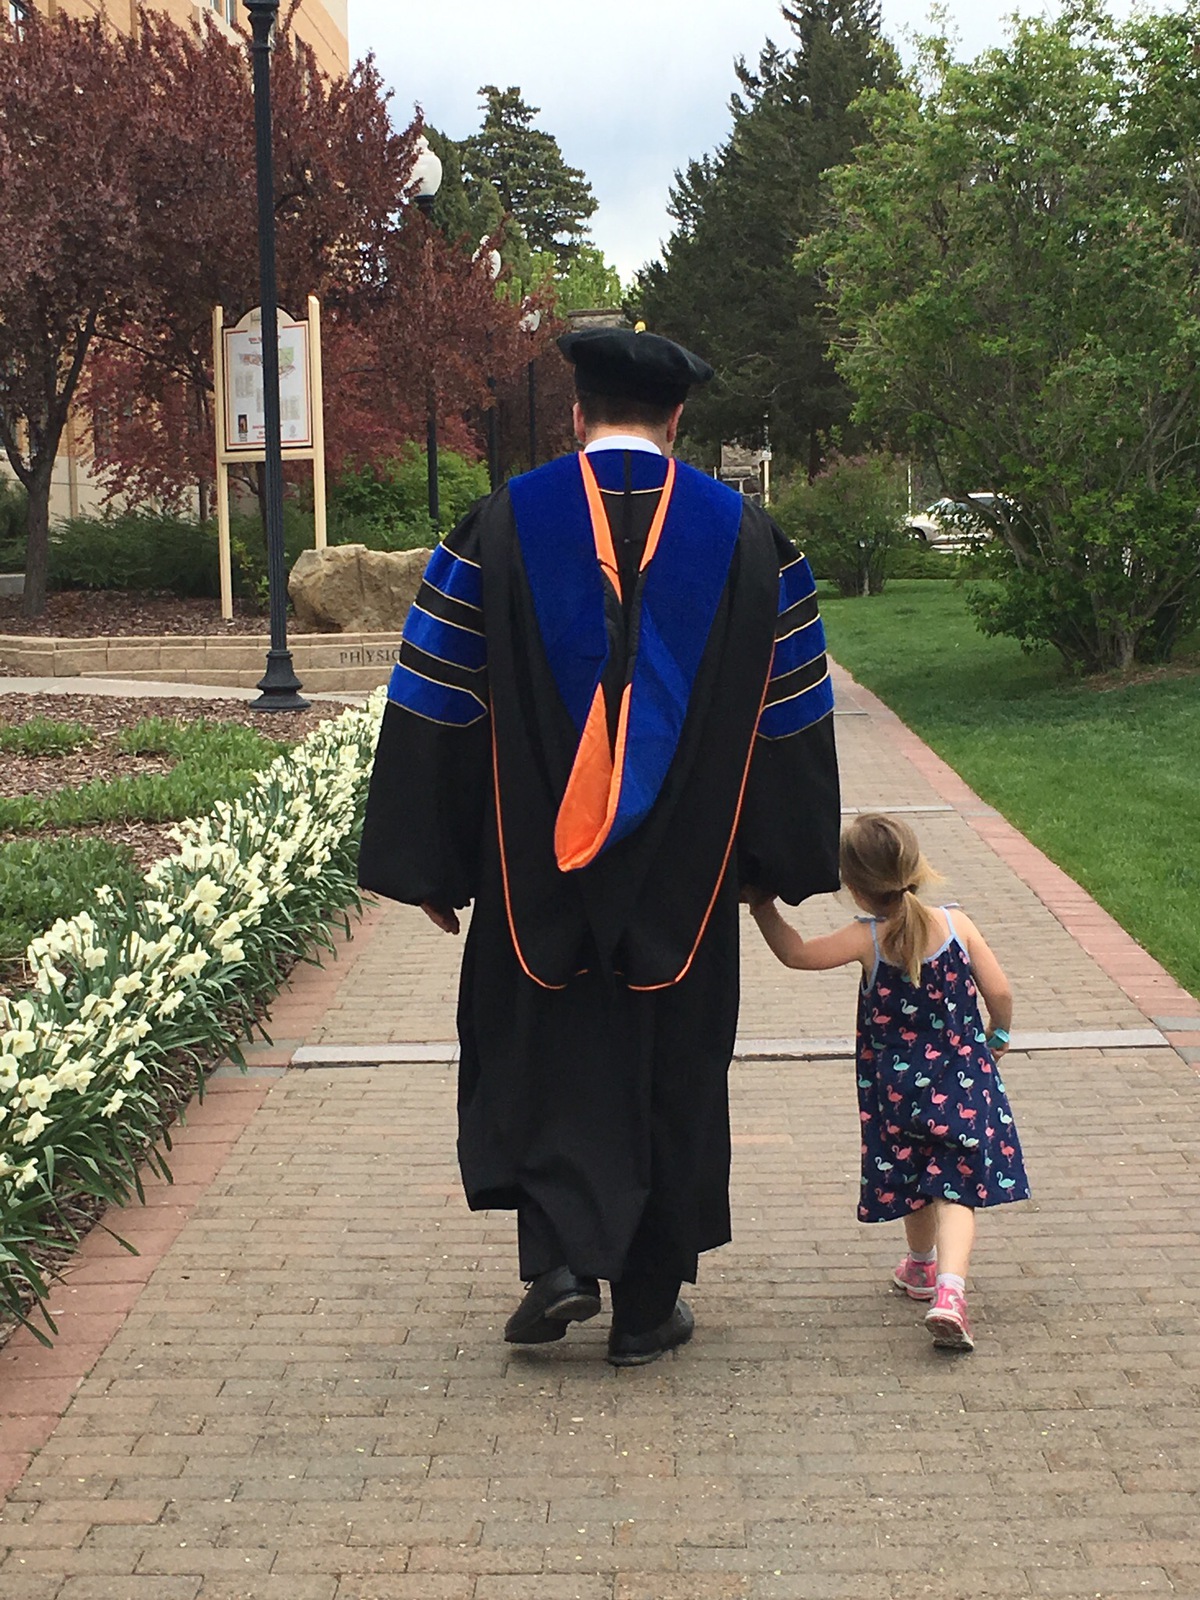 A graduate in regalia walks with a small child.